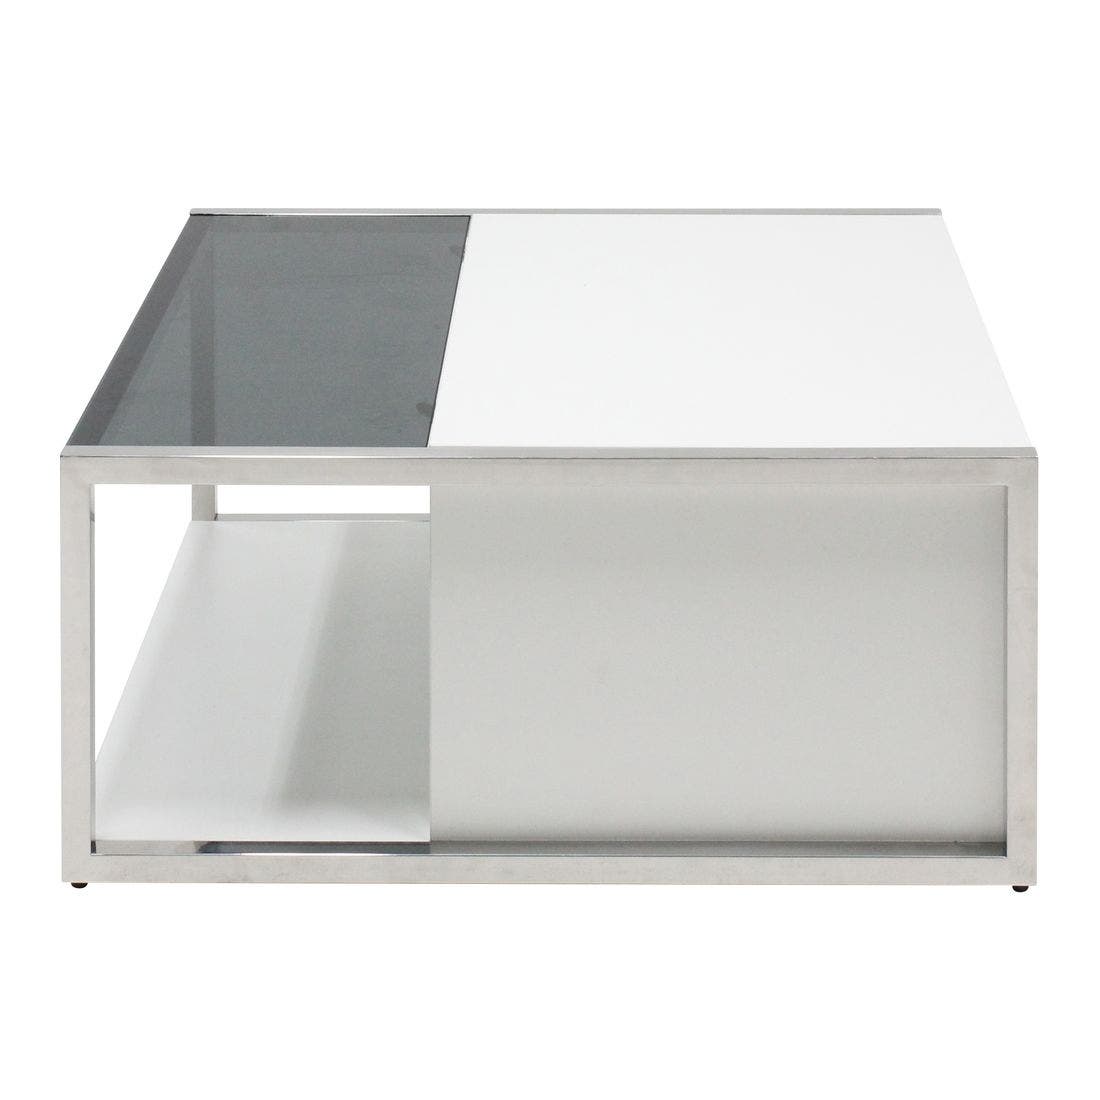 โต๊ะกลาง โต๊ะกลางเหล็กท๊อปกระจก รุ่น Ostia สีสีเงิน-SB Design Square